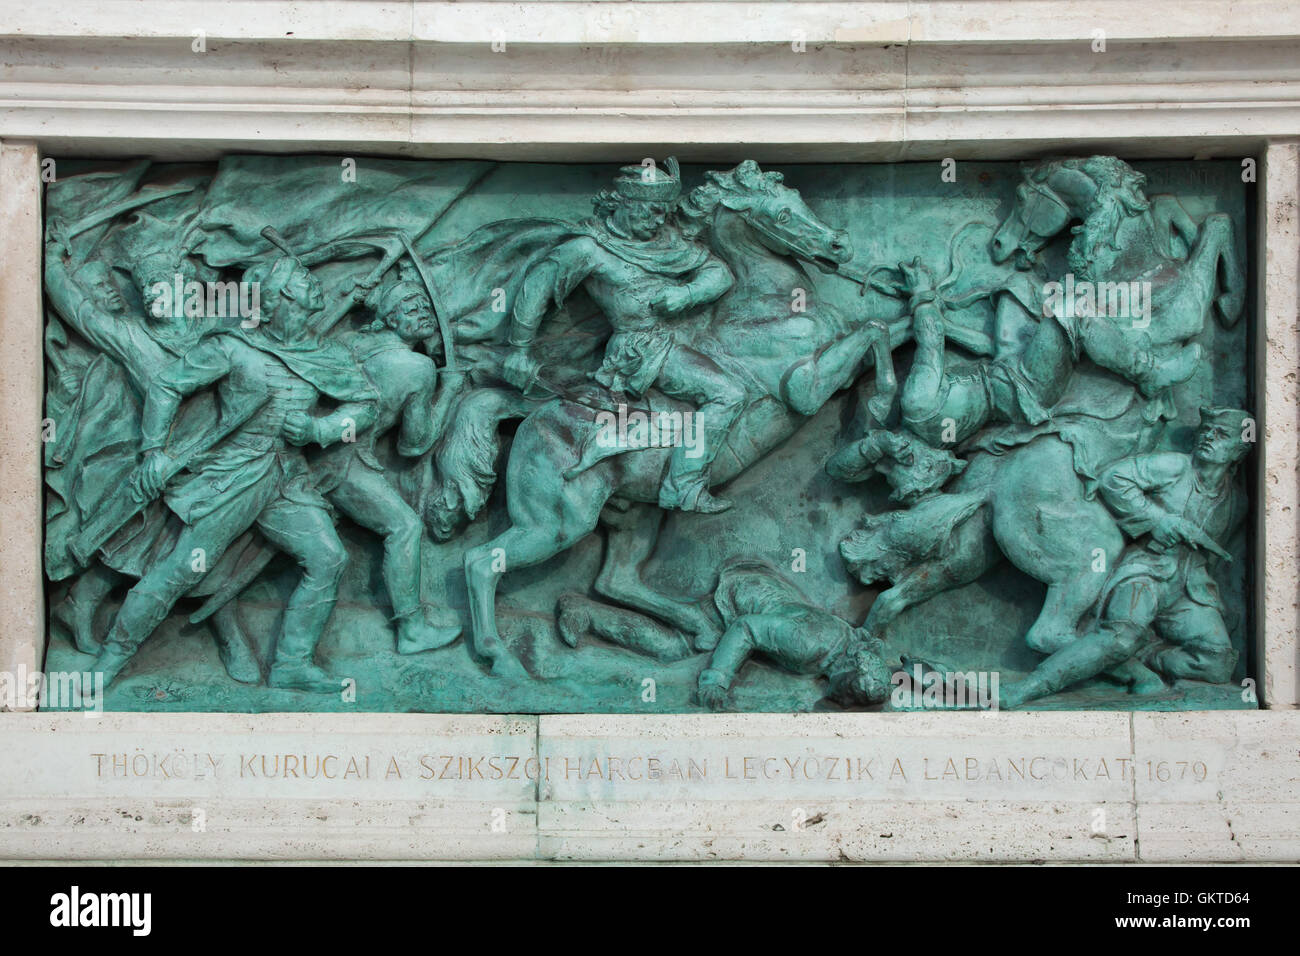 Imre Thokoly besiegt die Habsburg Imperiale Armee bei der Schlacht von Szikszo im Jahre 1679. Bronzerelief von ungarischen Bildhauer Jeno Grantner auf dem Millennium-Denkmal in der Heldenplatz in Budapest, Ungarn. Stockfoto